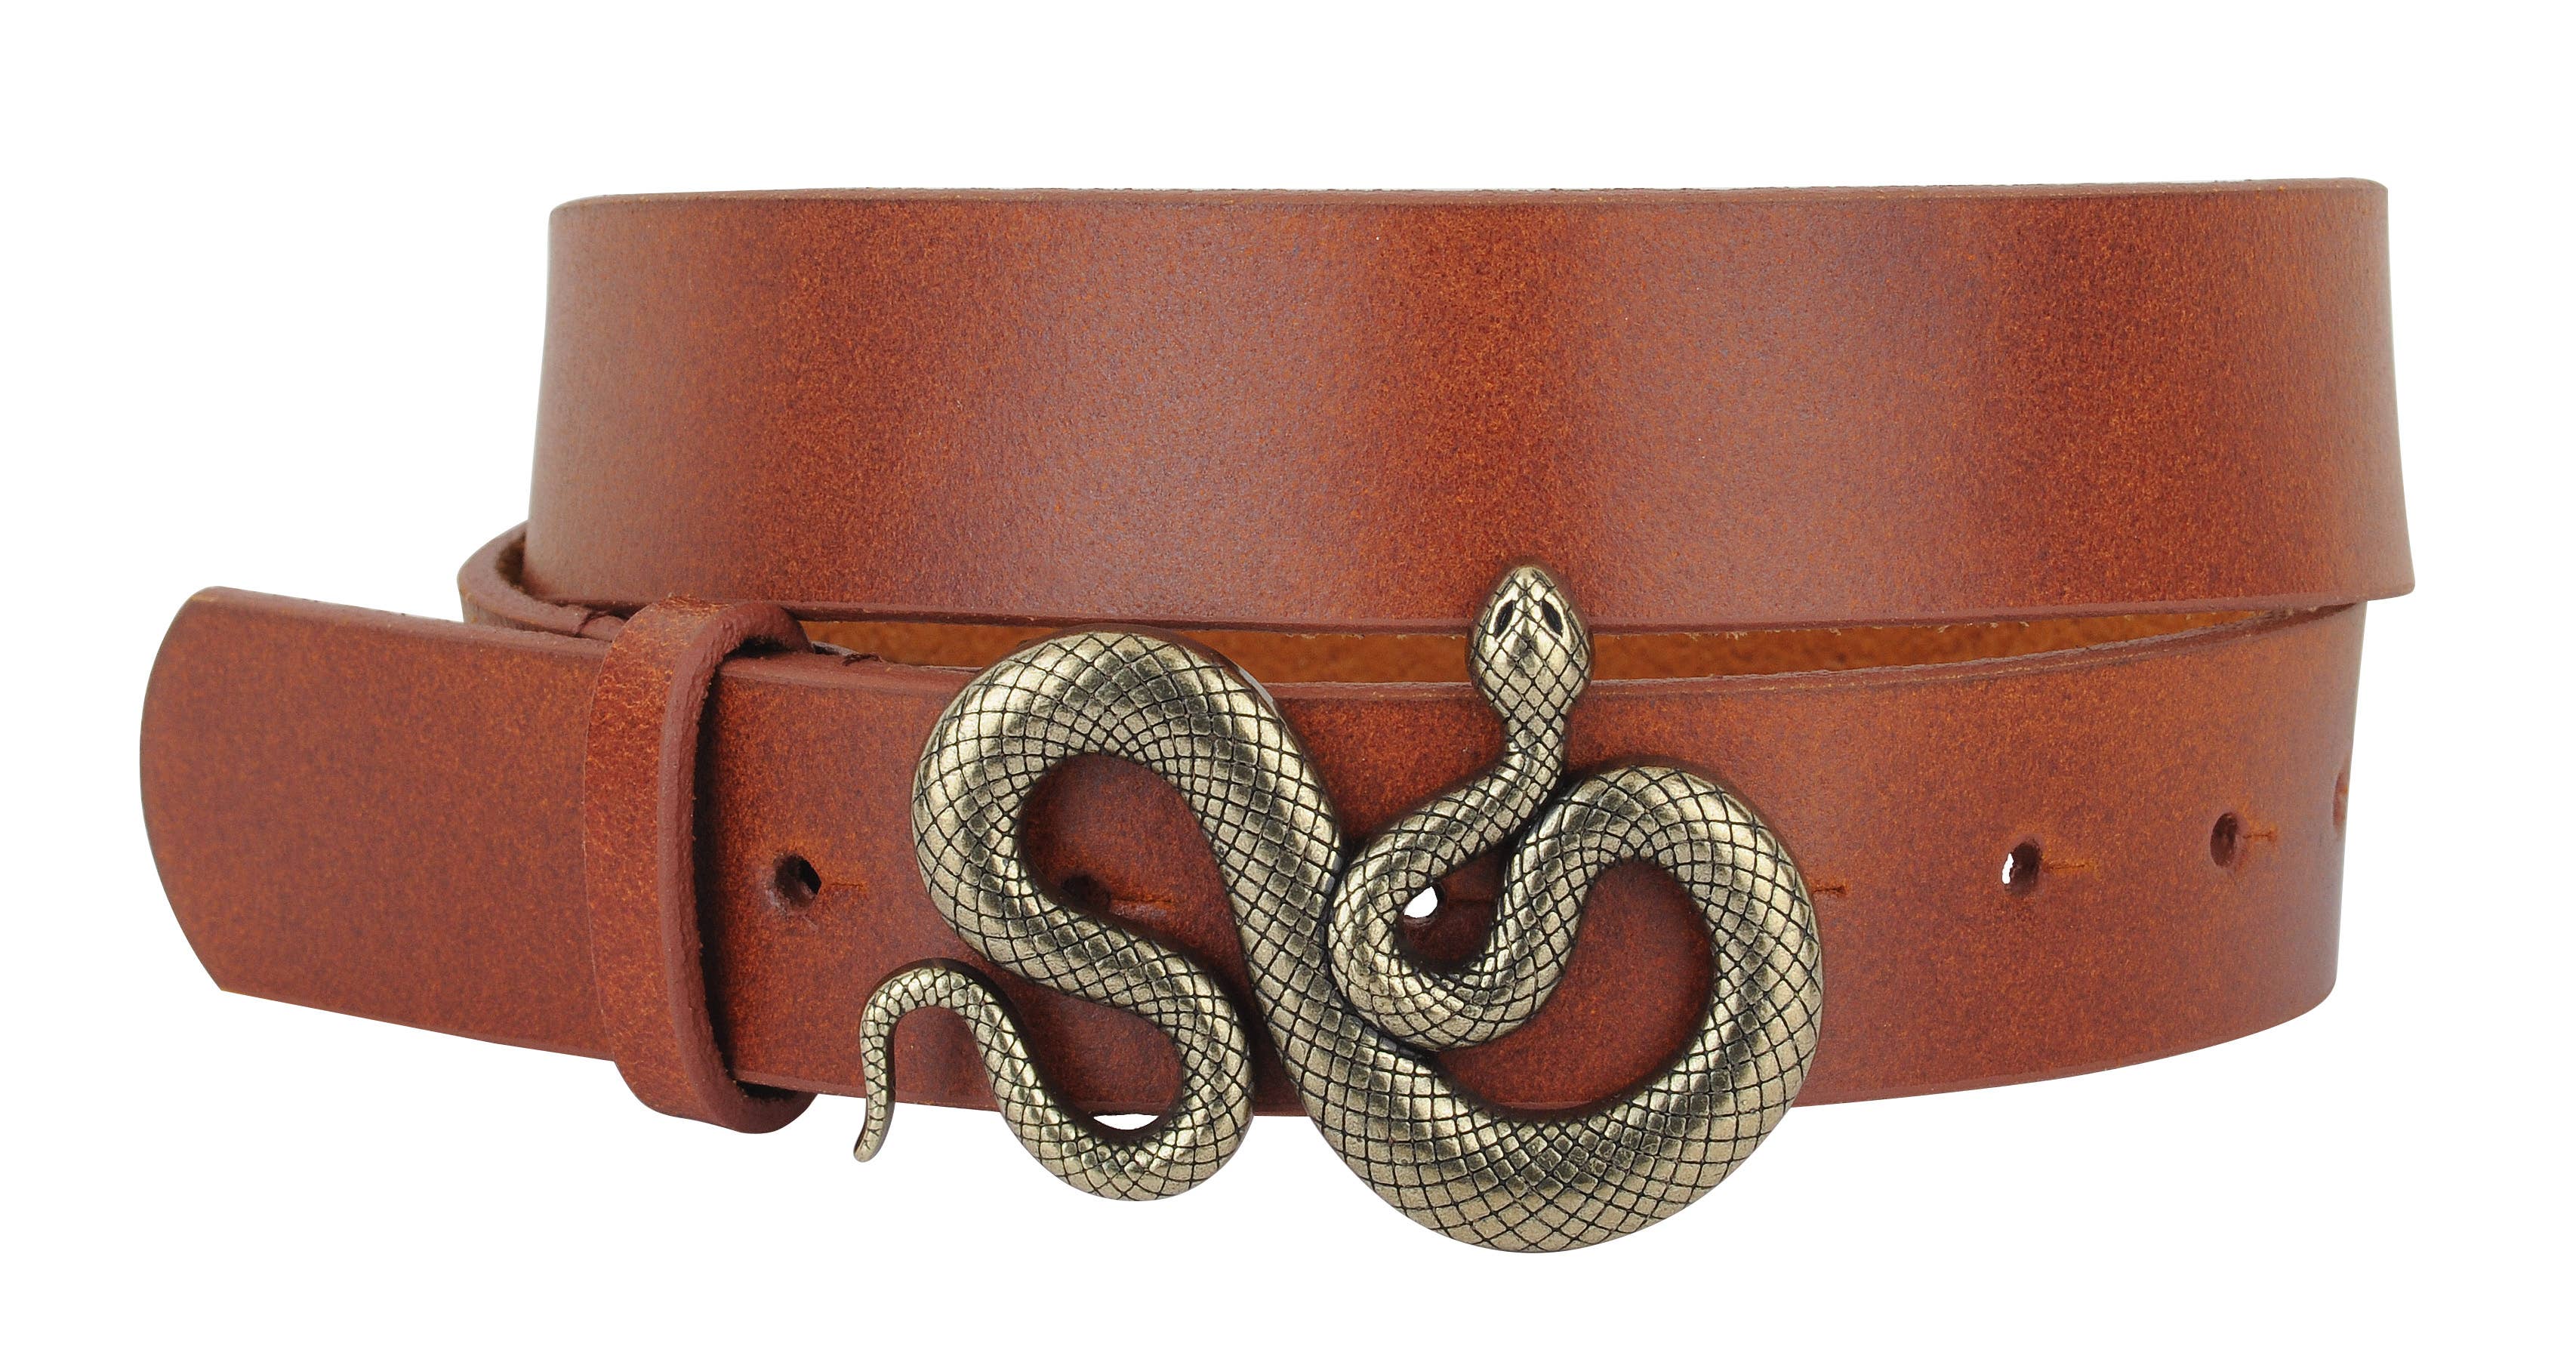 Snake Buckle Leather Belt in Tan